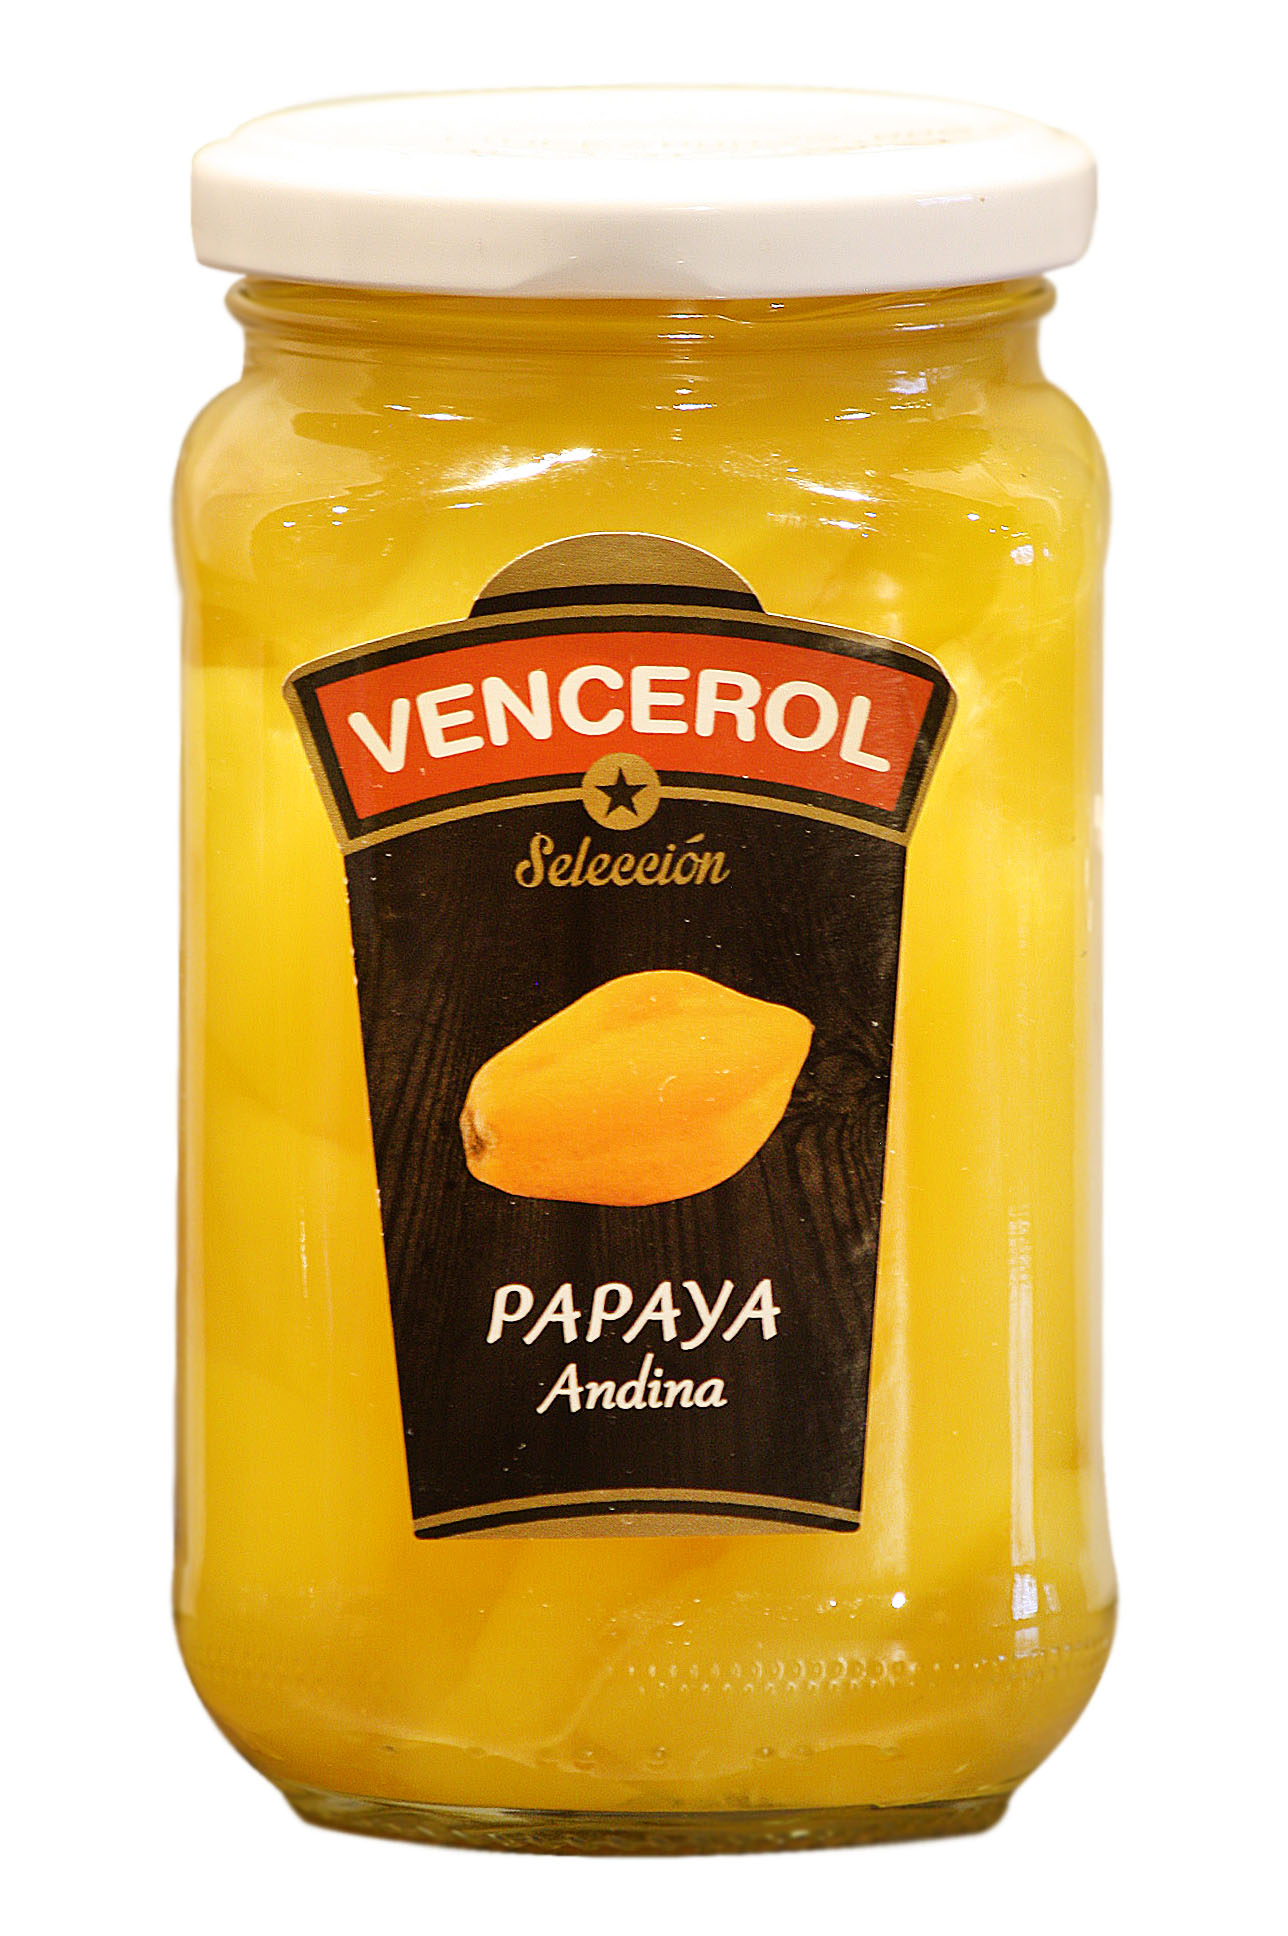 Papaya in syrup